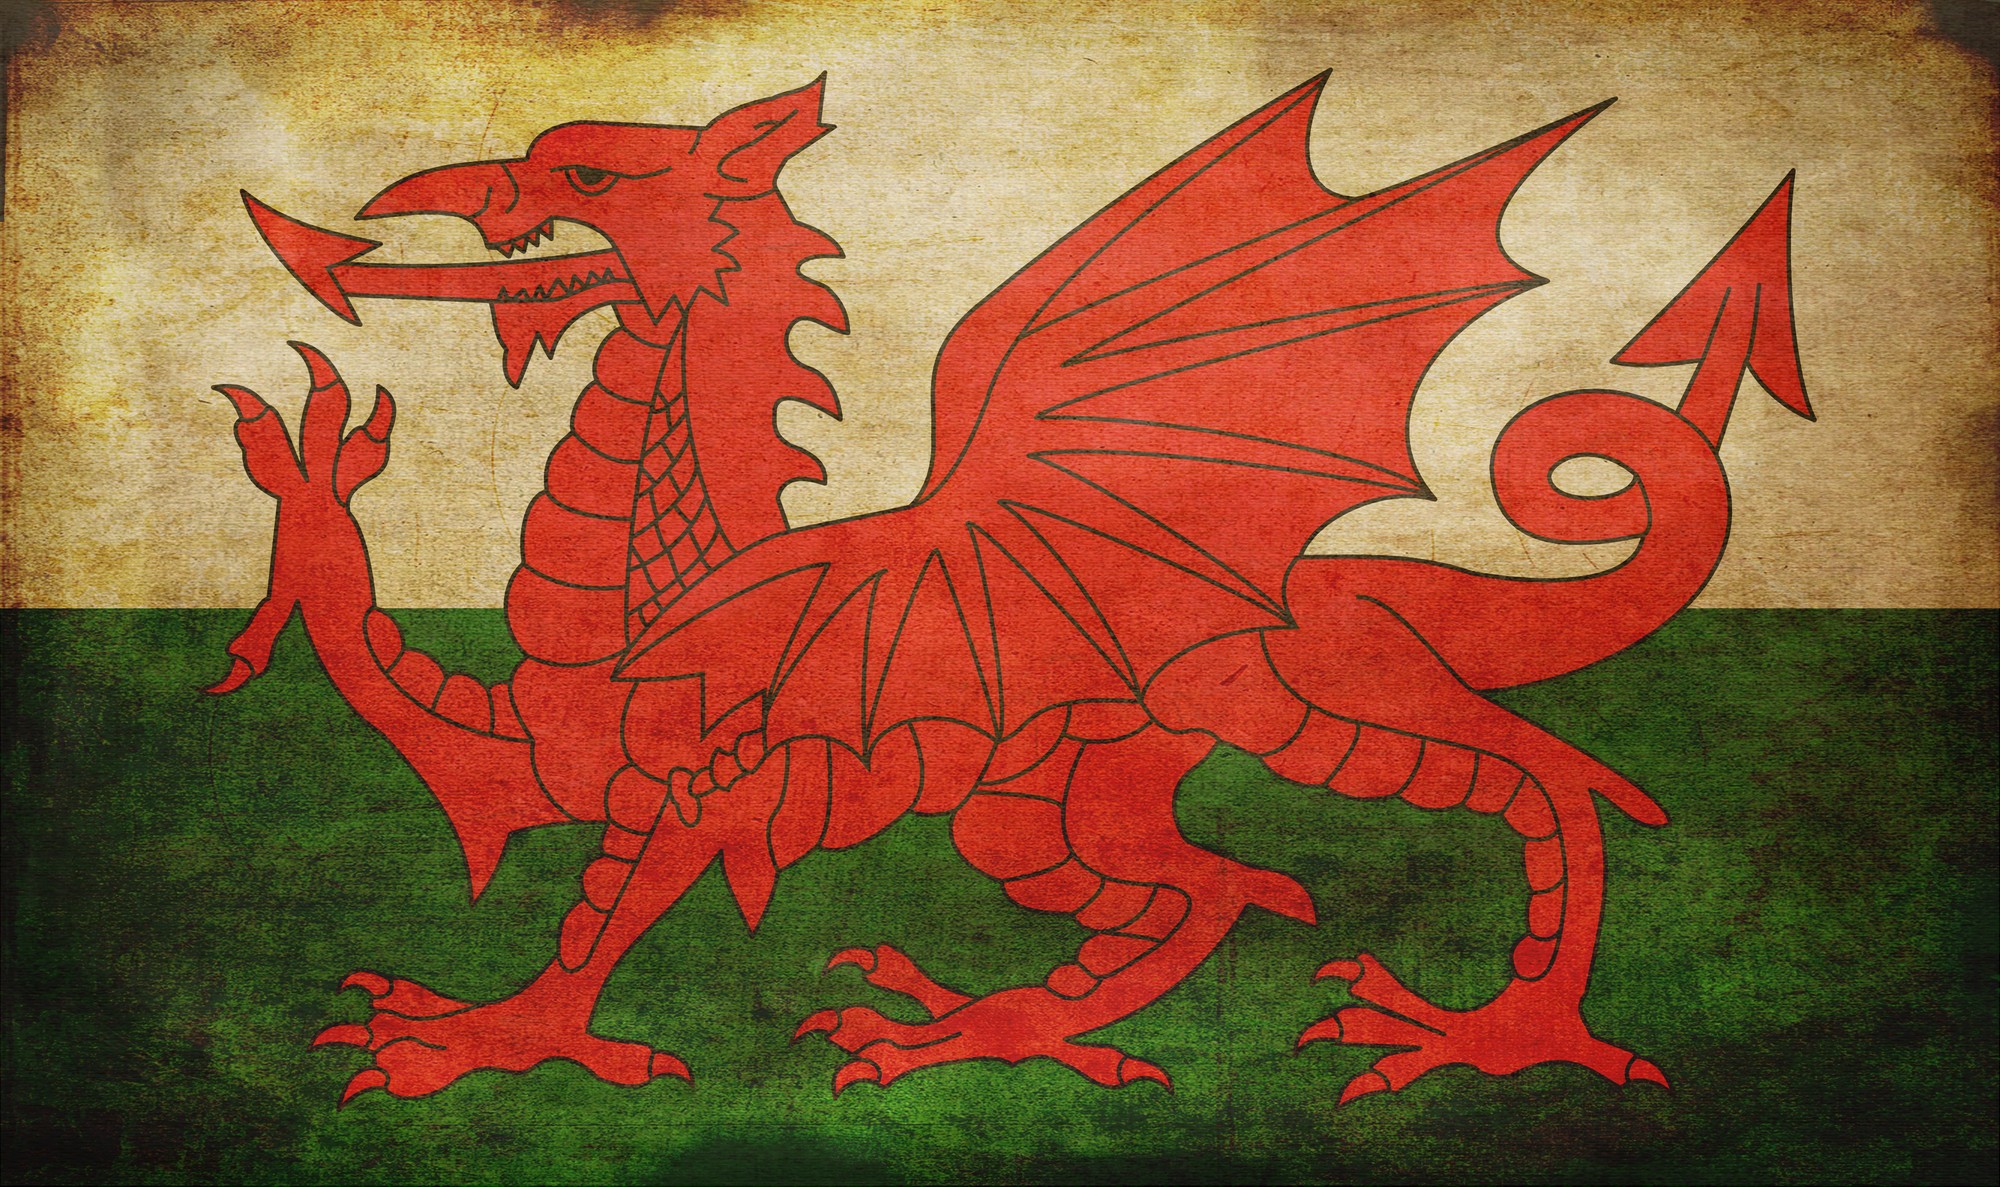 Скачать обои Флаг Уэльса на телефон бесплатно